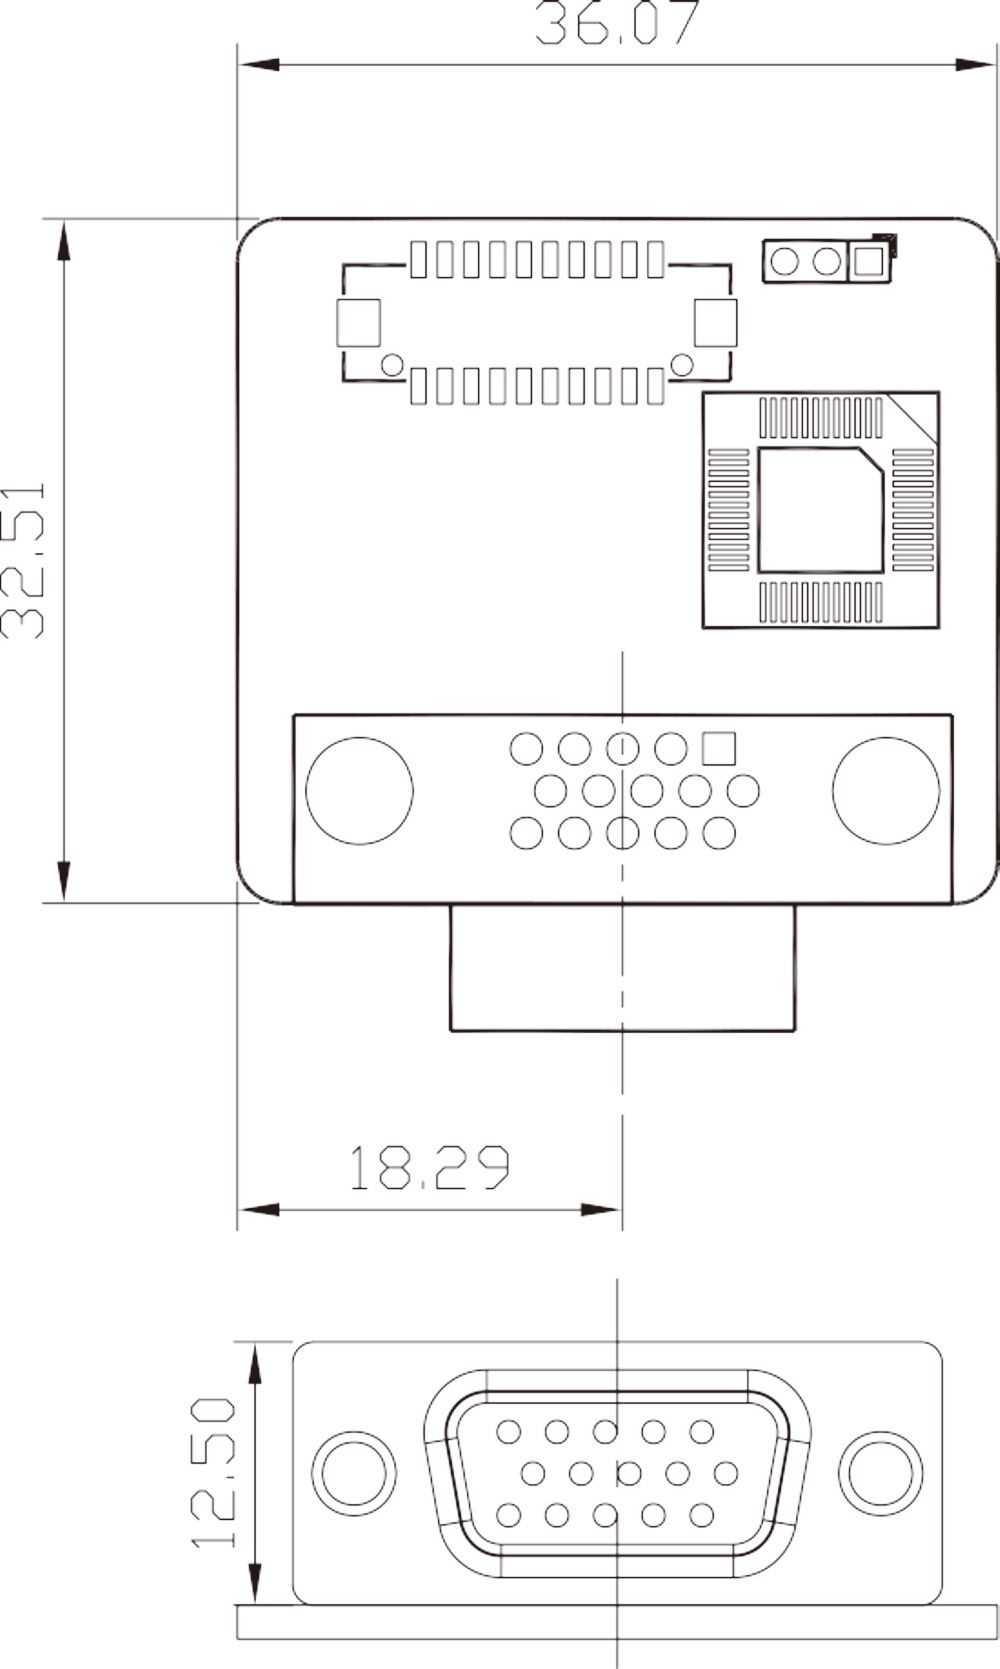 Adapter Board LVDS-VGA-R10 Skizze